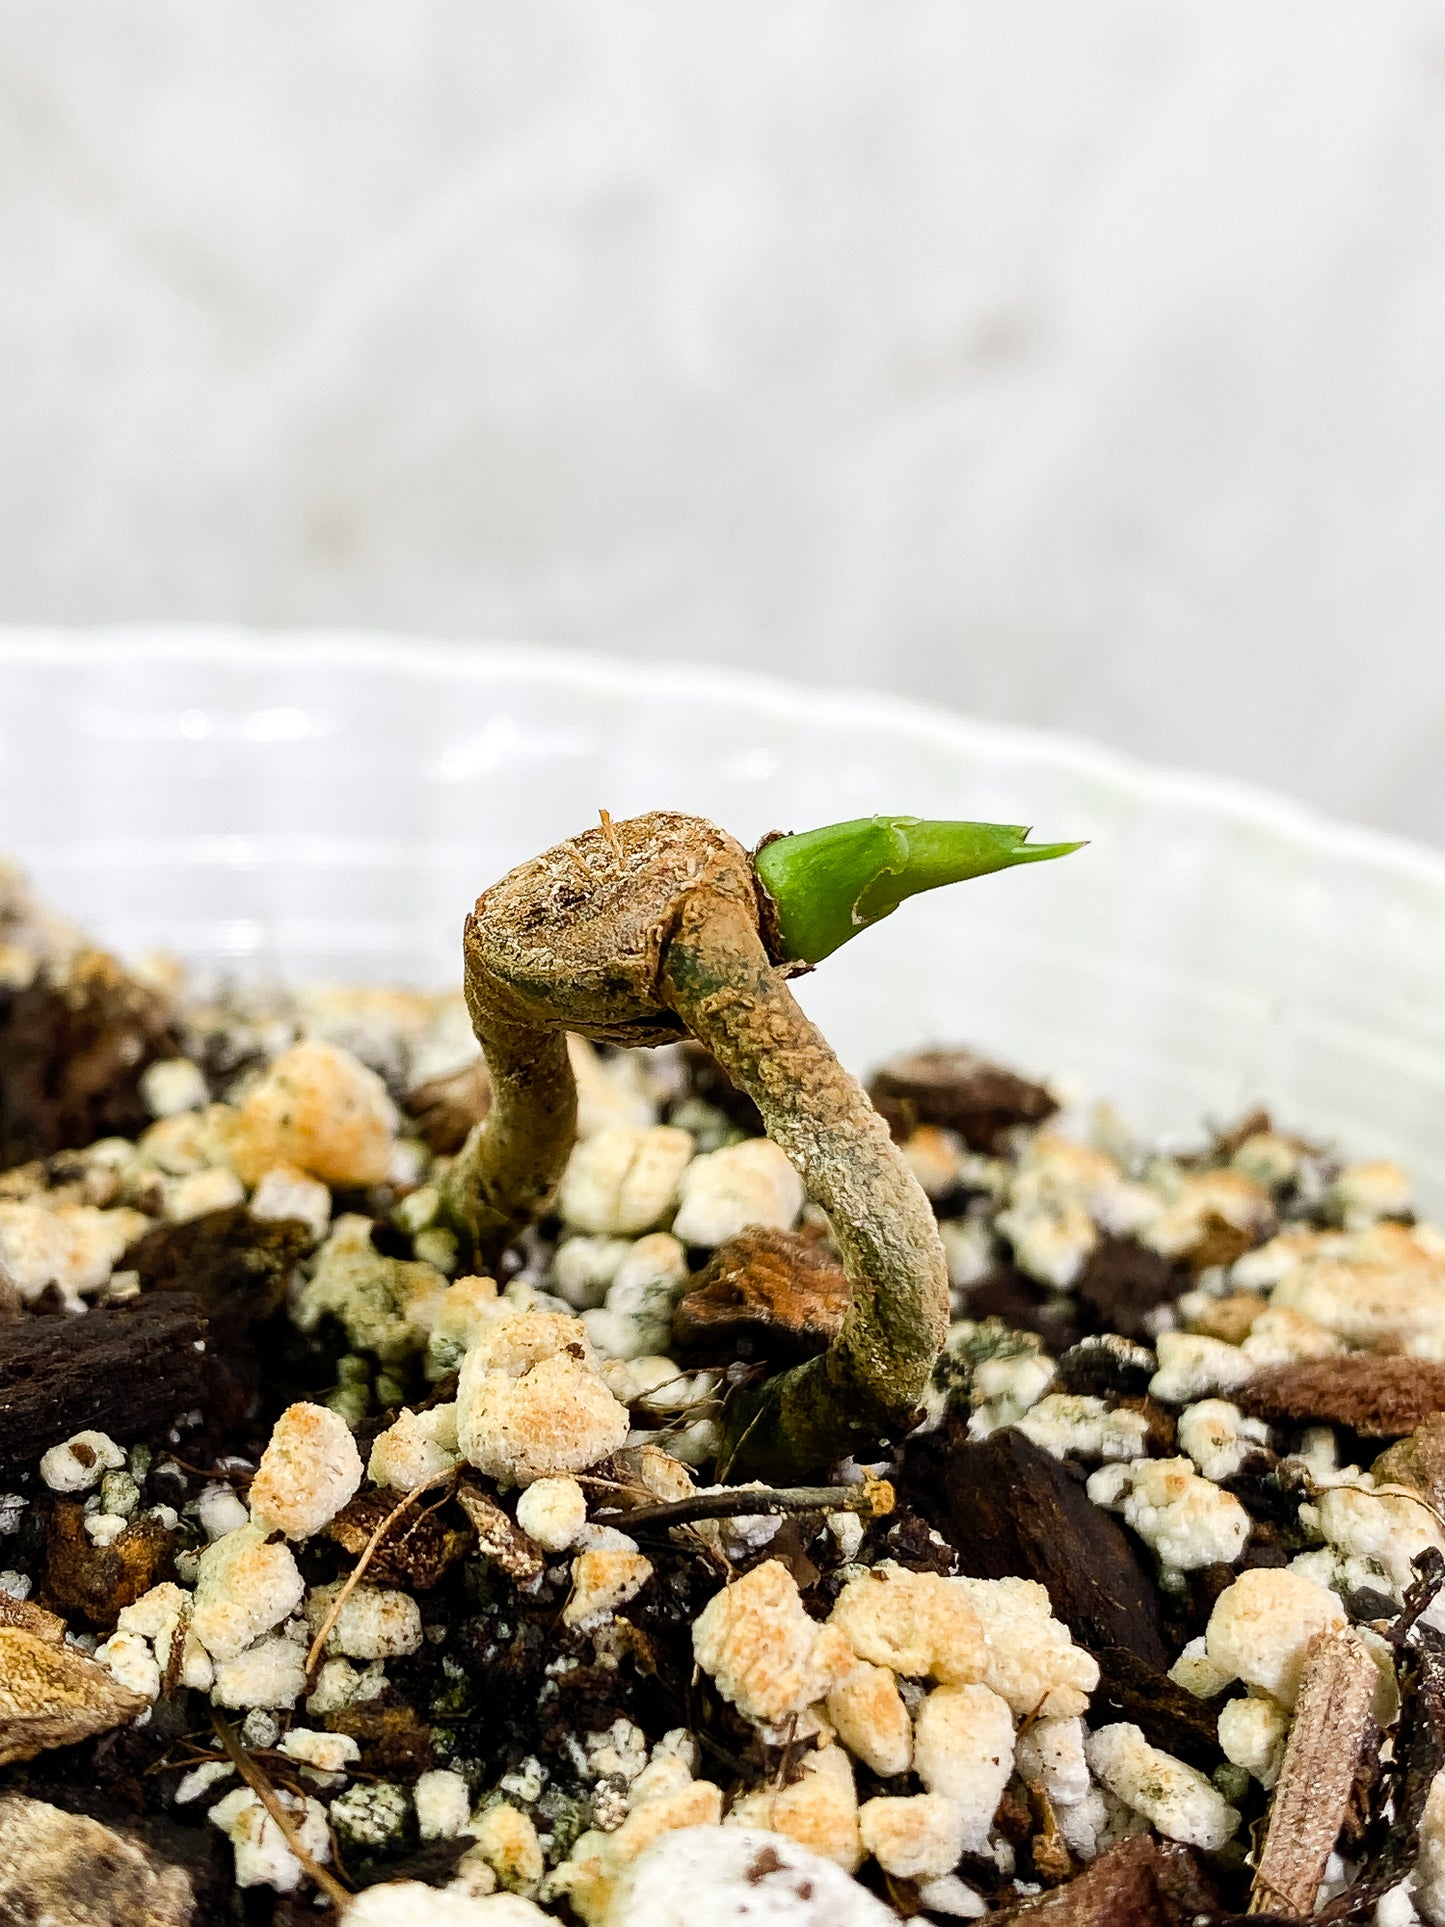 Anthurium Clarinervium x Pedatoradiatum fully rooted node 1 sprout